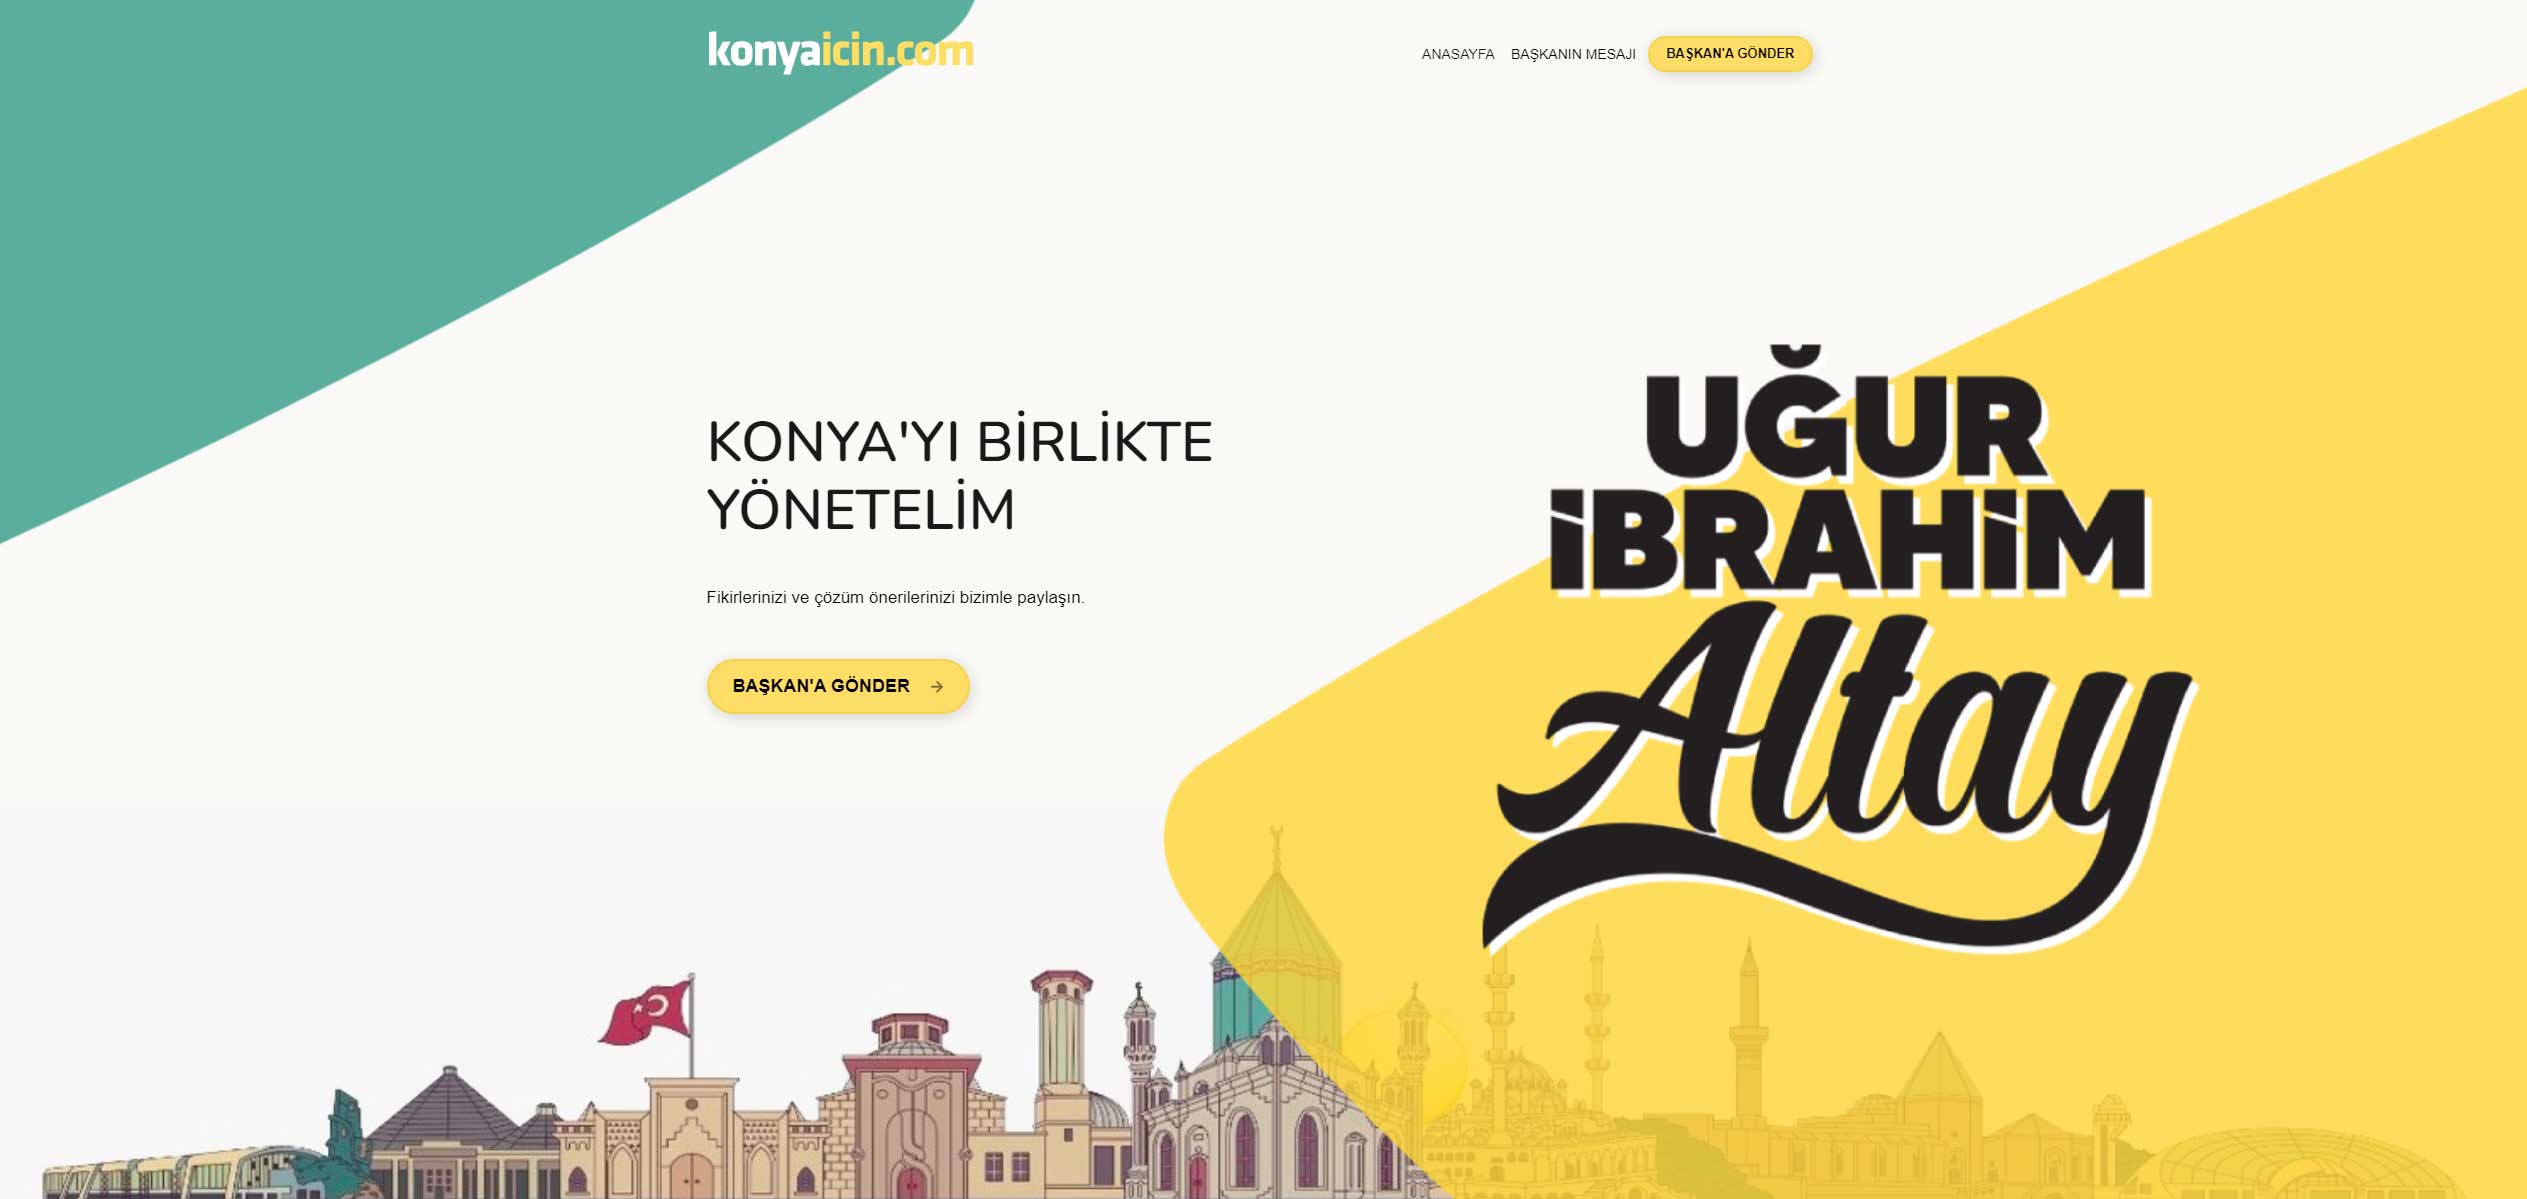 Baskan Altay Konyaicin Com